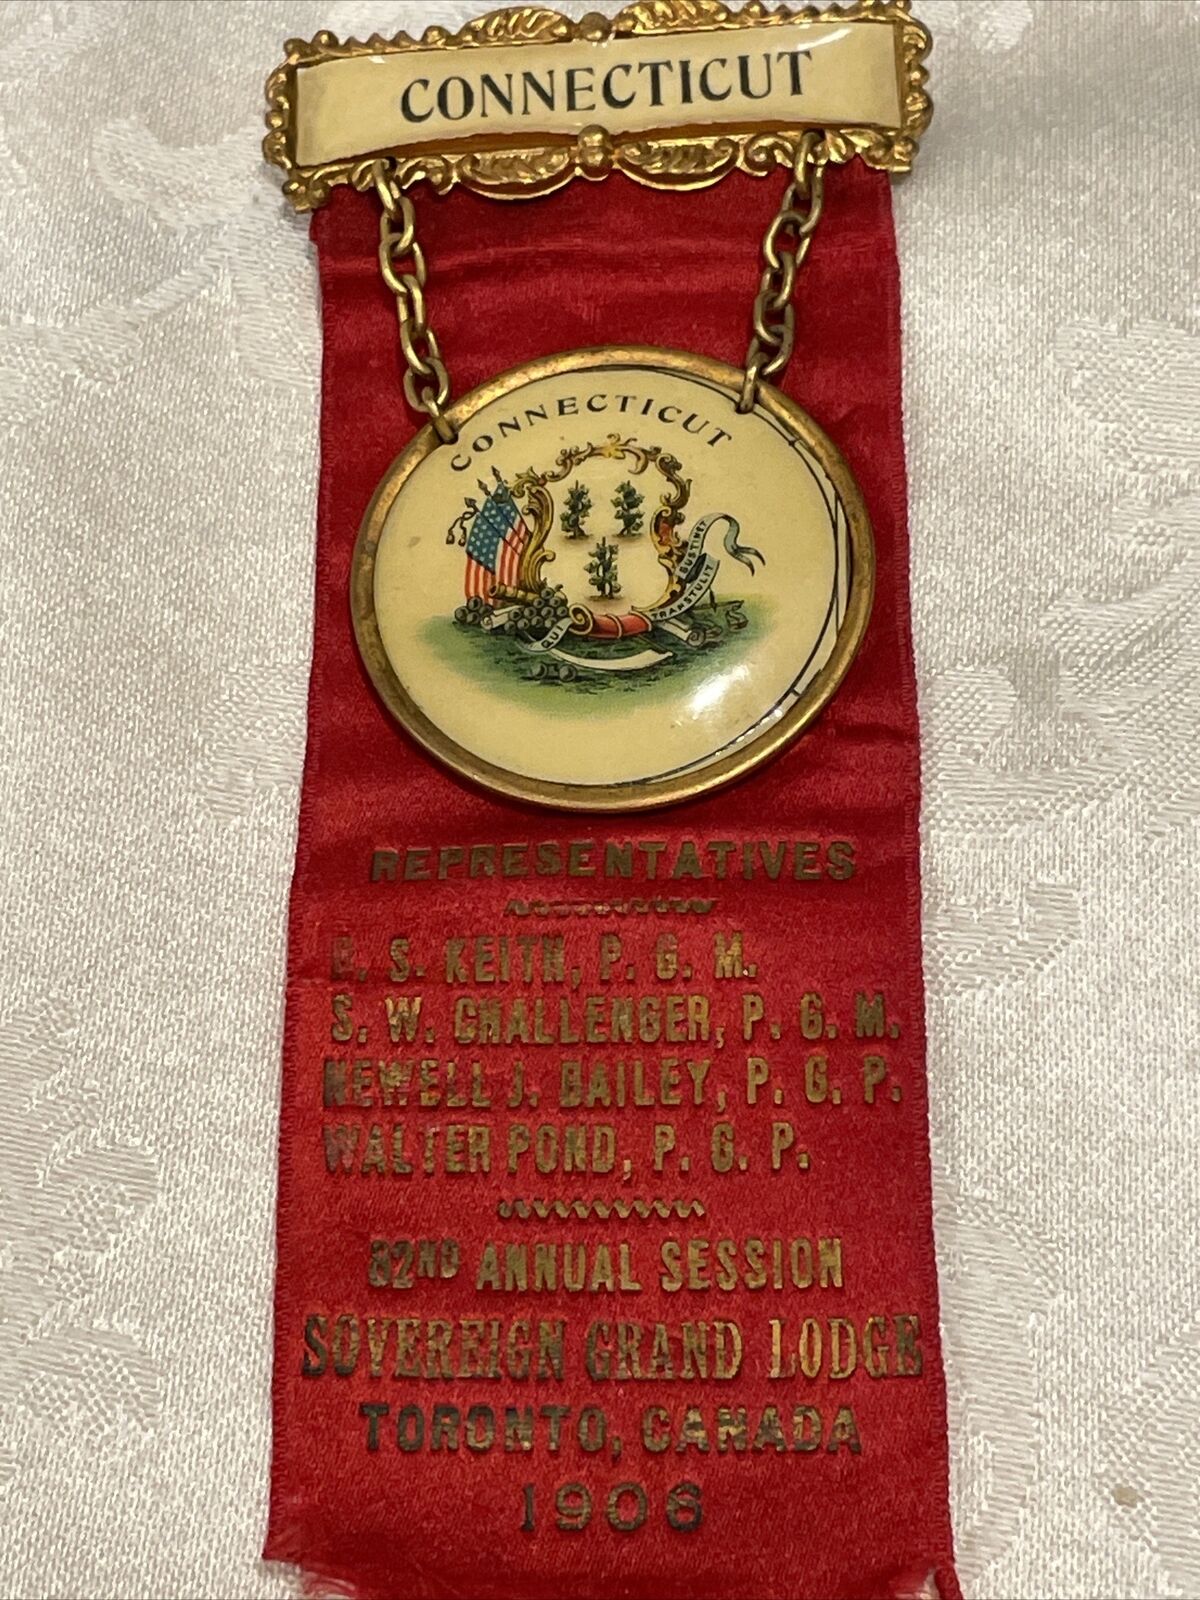 Connecticut Representative Badge 32 Session 1906 Grand Lodge Toronto Canada